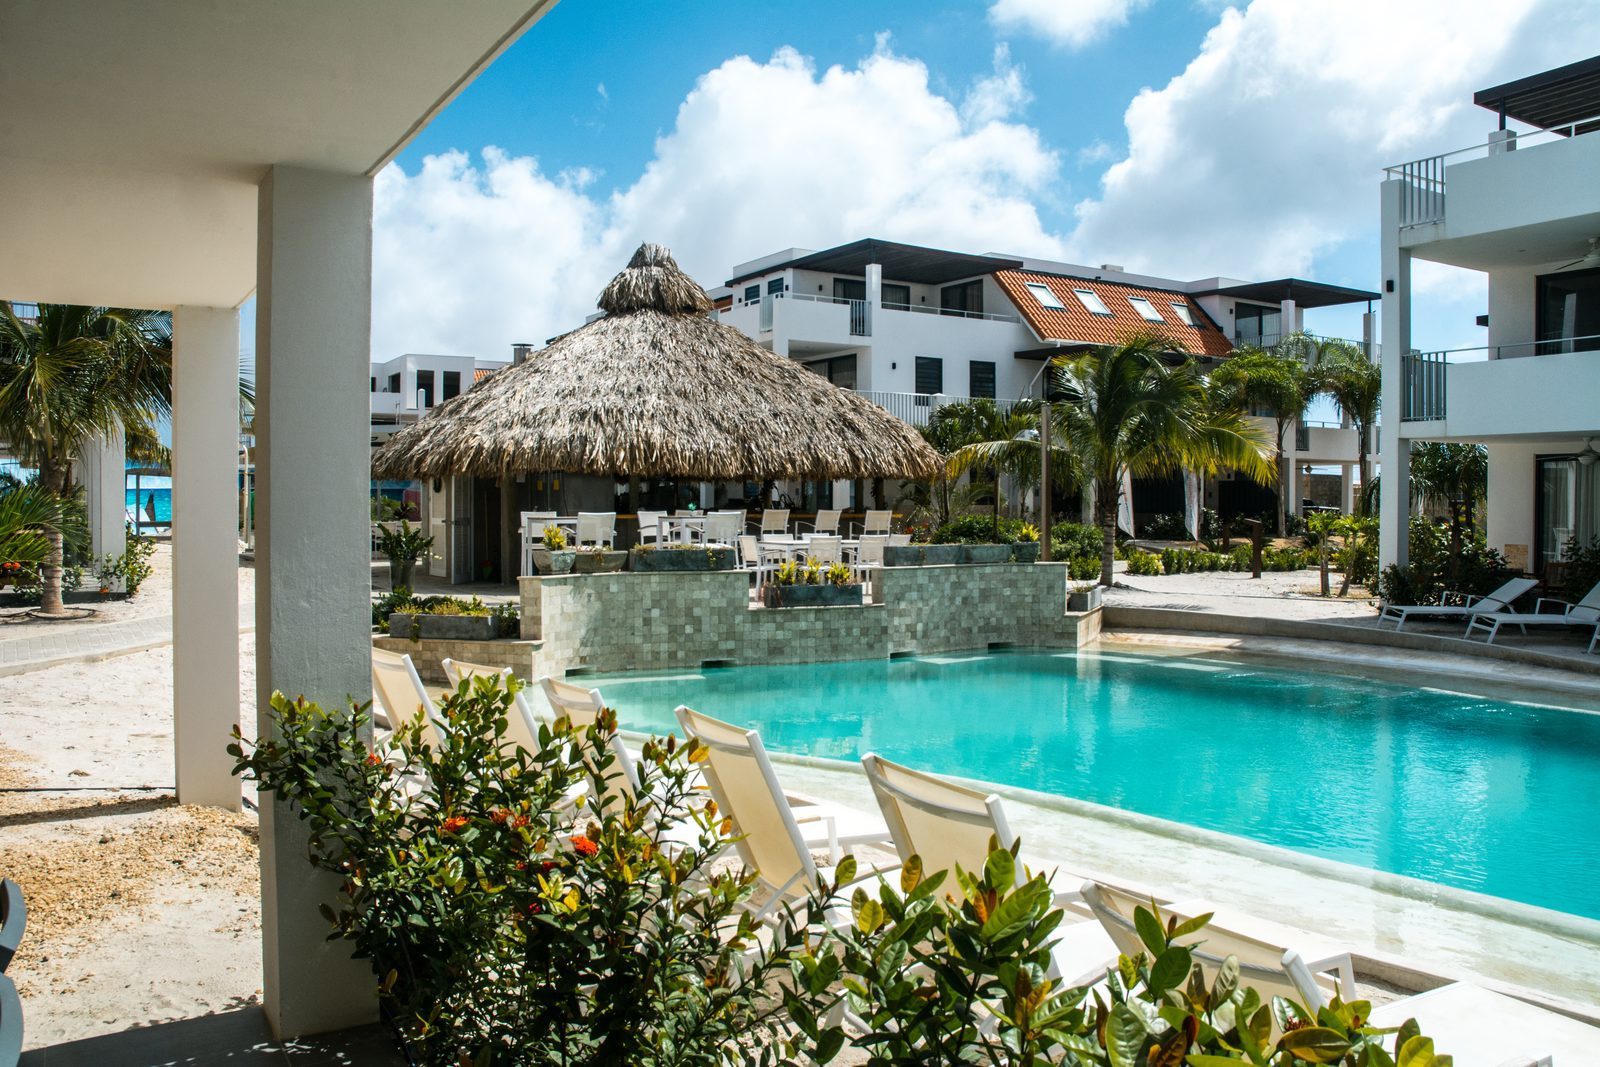 Suchen Sie nach einem Ferienort auf Bonaire? Das Resort Bonaire bietet Ihnen einen hübschen Swimmingpool und luxuriöse Ferienwohnungen.